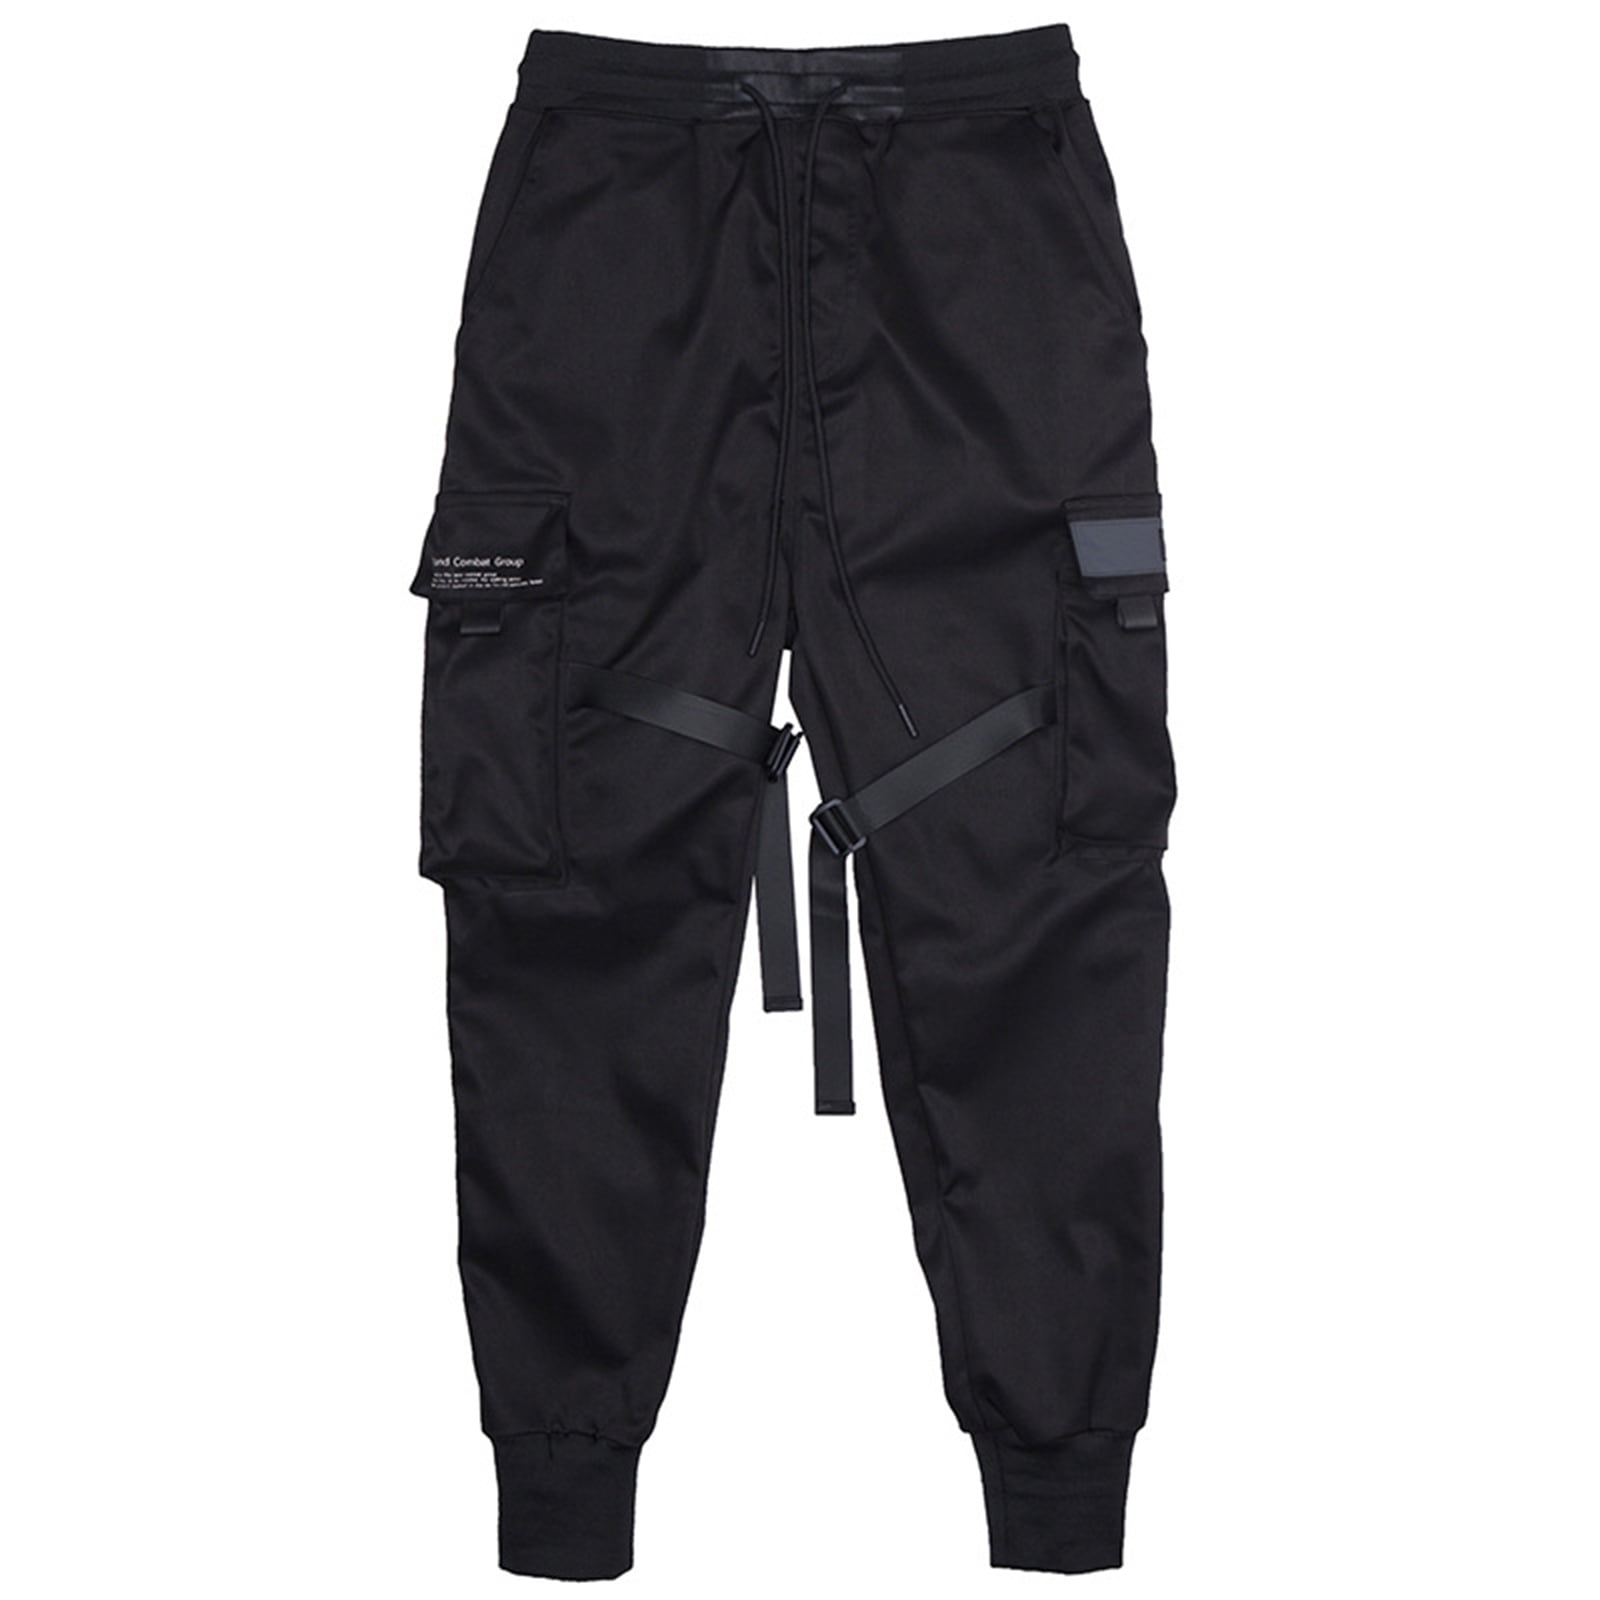 New Men's Sweatpants Sport Sweat Pants Hip Hop Dance Trousers Slacks Jogger